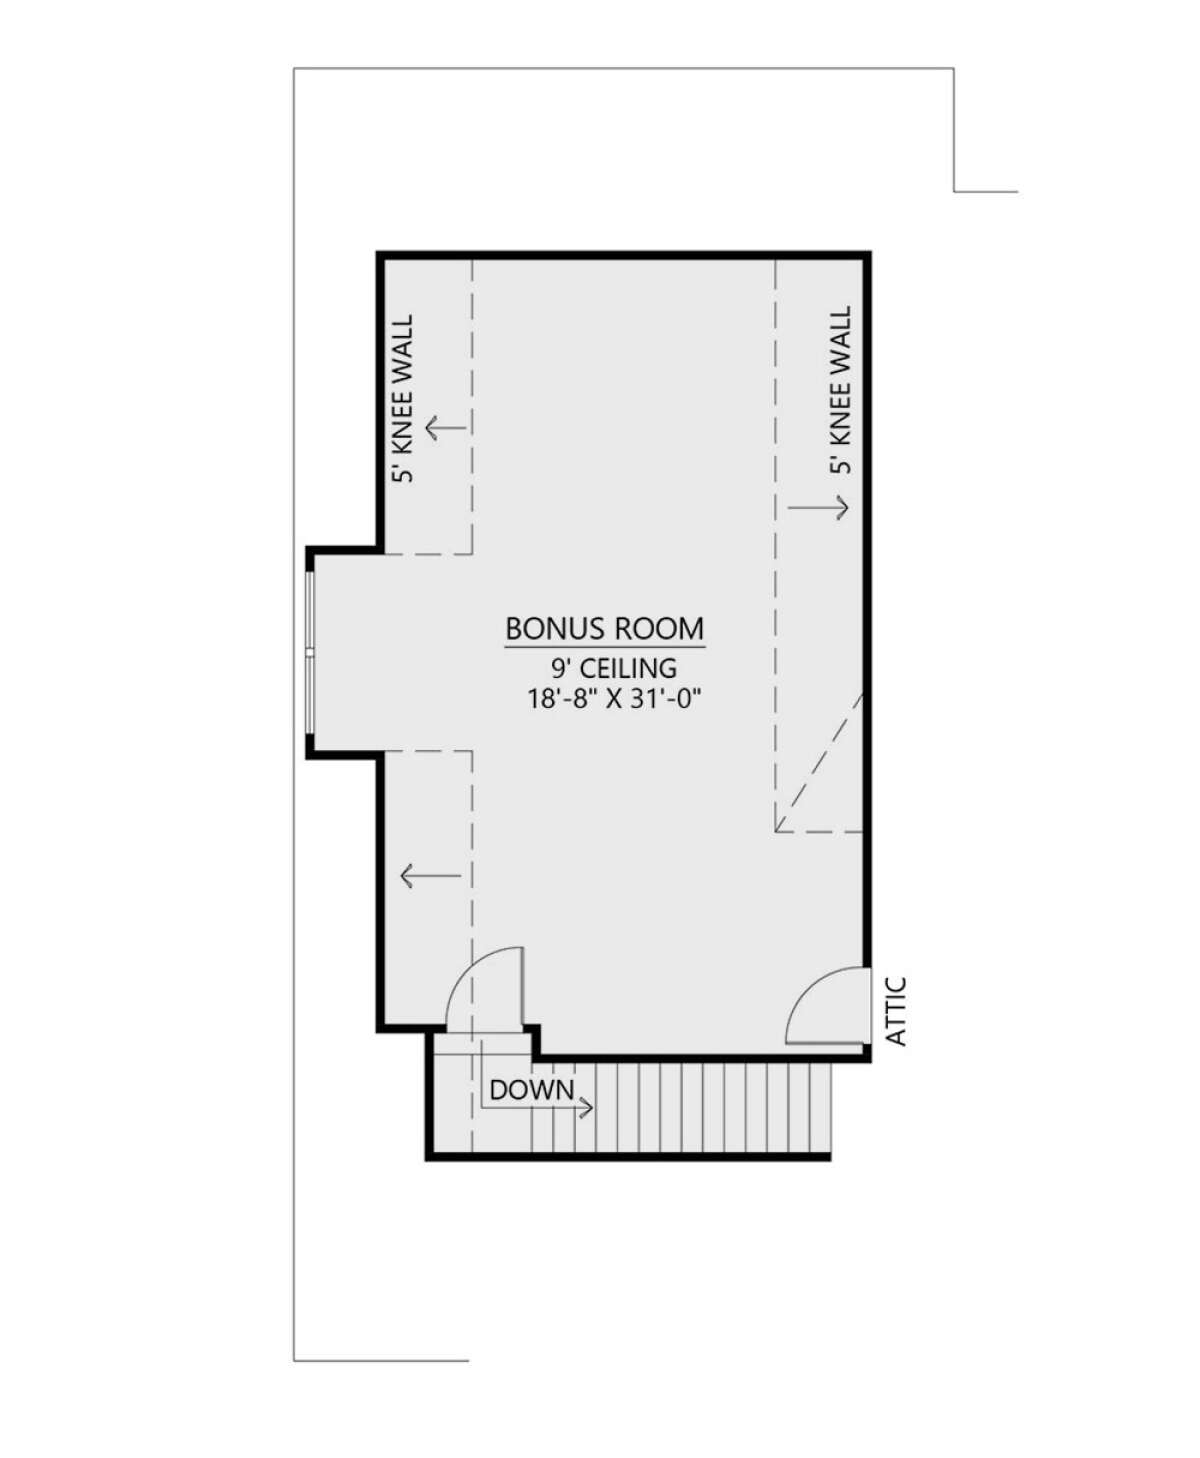 Bonus Room for House Plan #4534-00076